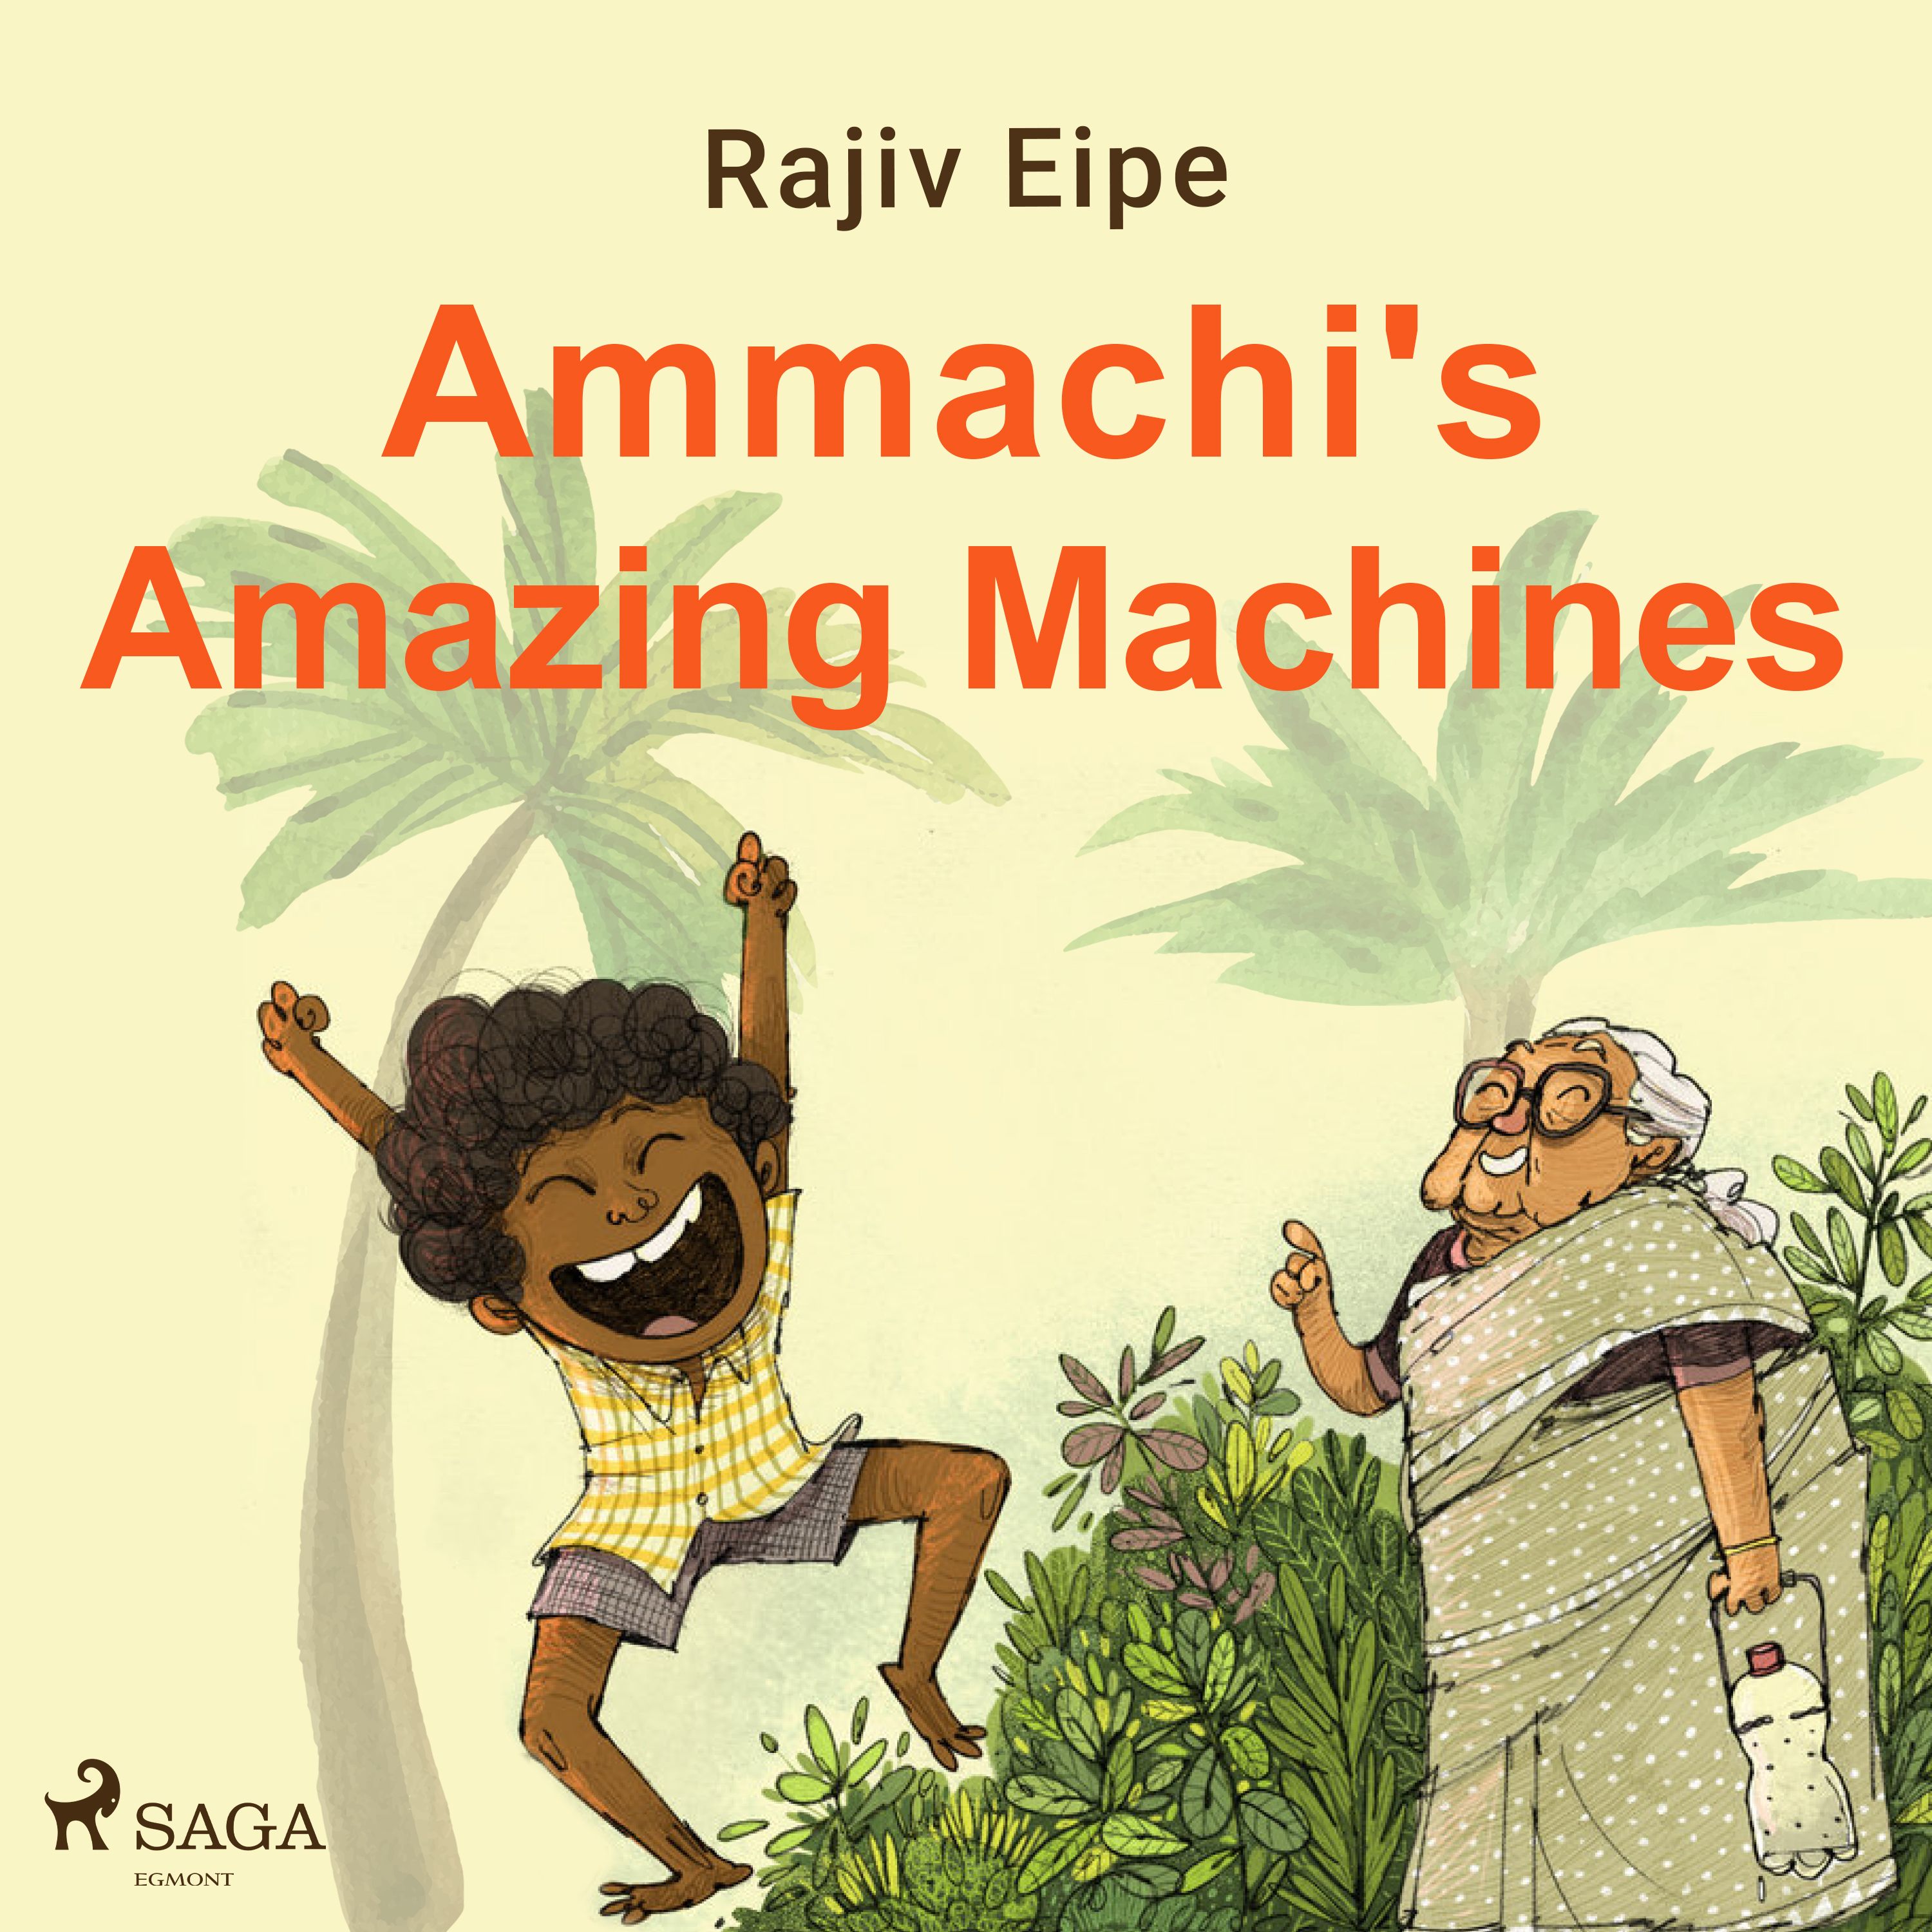 Ammachi's Amazing Machines, ljudbok av Rajiv Eipe